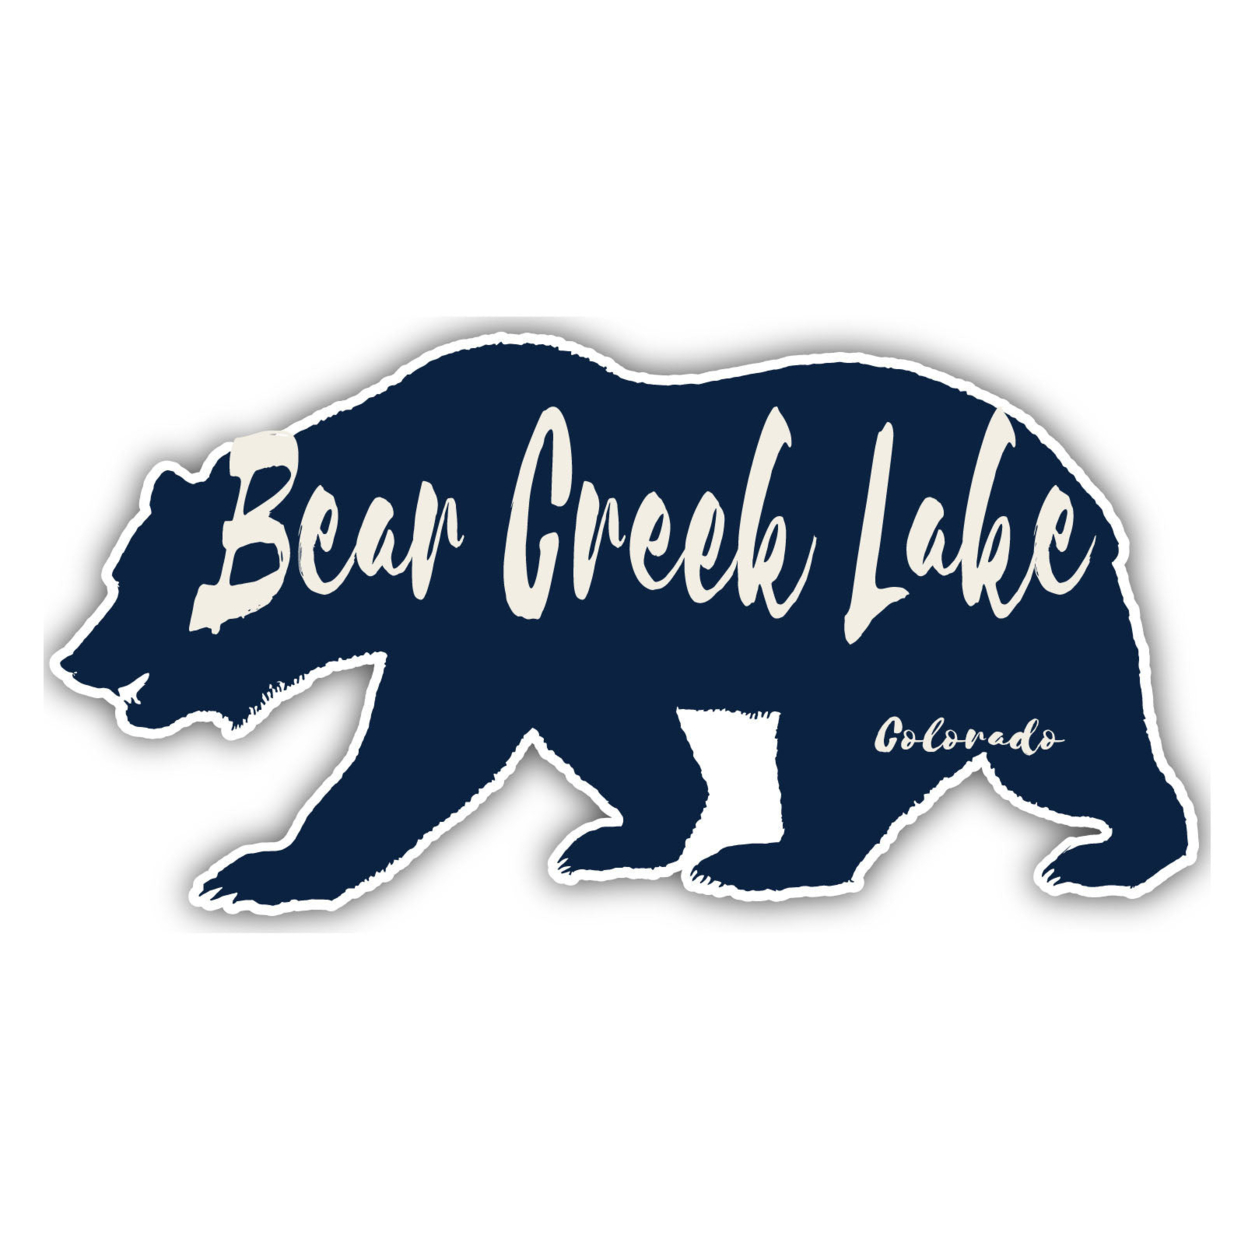 Bear Creek Lake Colorado Souvenir Decorative Stickers (Choose Theme And Size) - Single Unit, 4-Inch, Bear